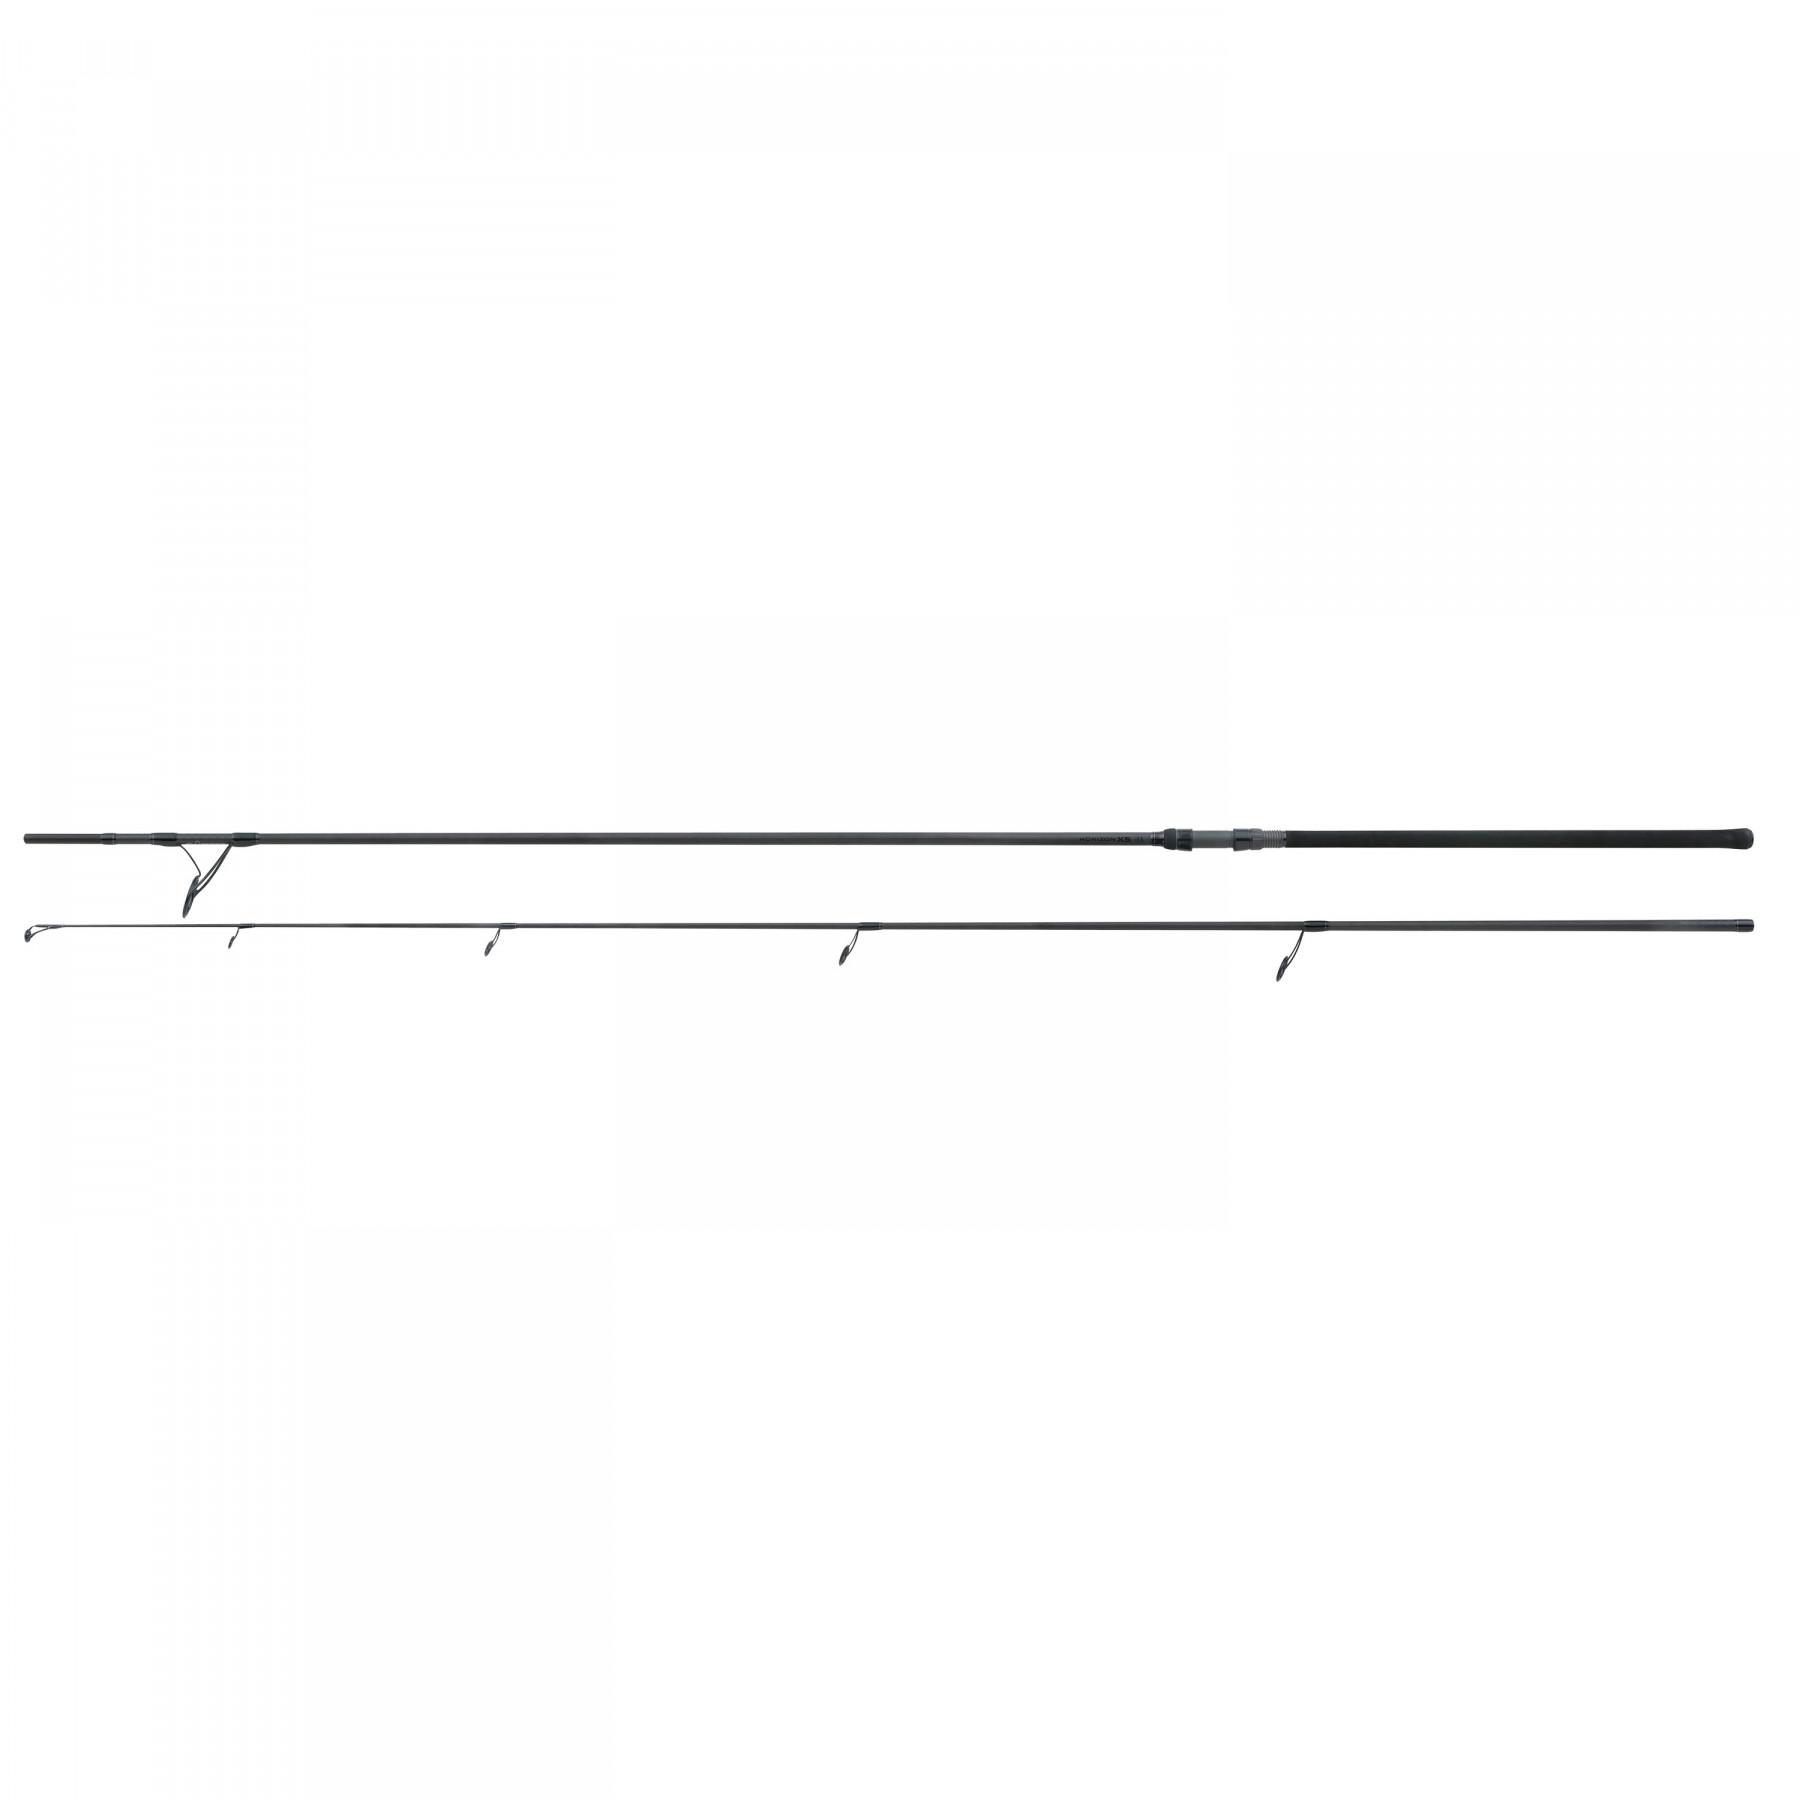 Hengel Fox Horizon X5 13ft 3.75lb 50mm Ringing Duplon Handle